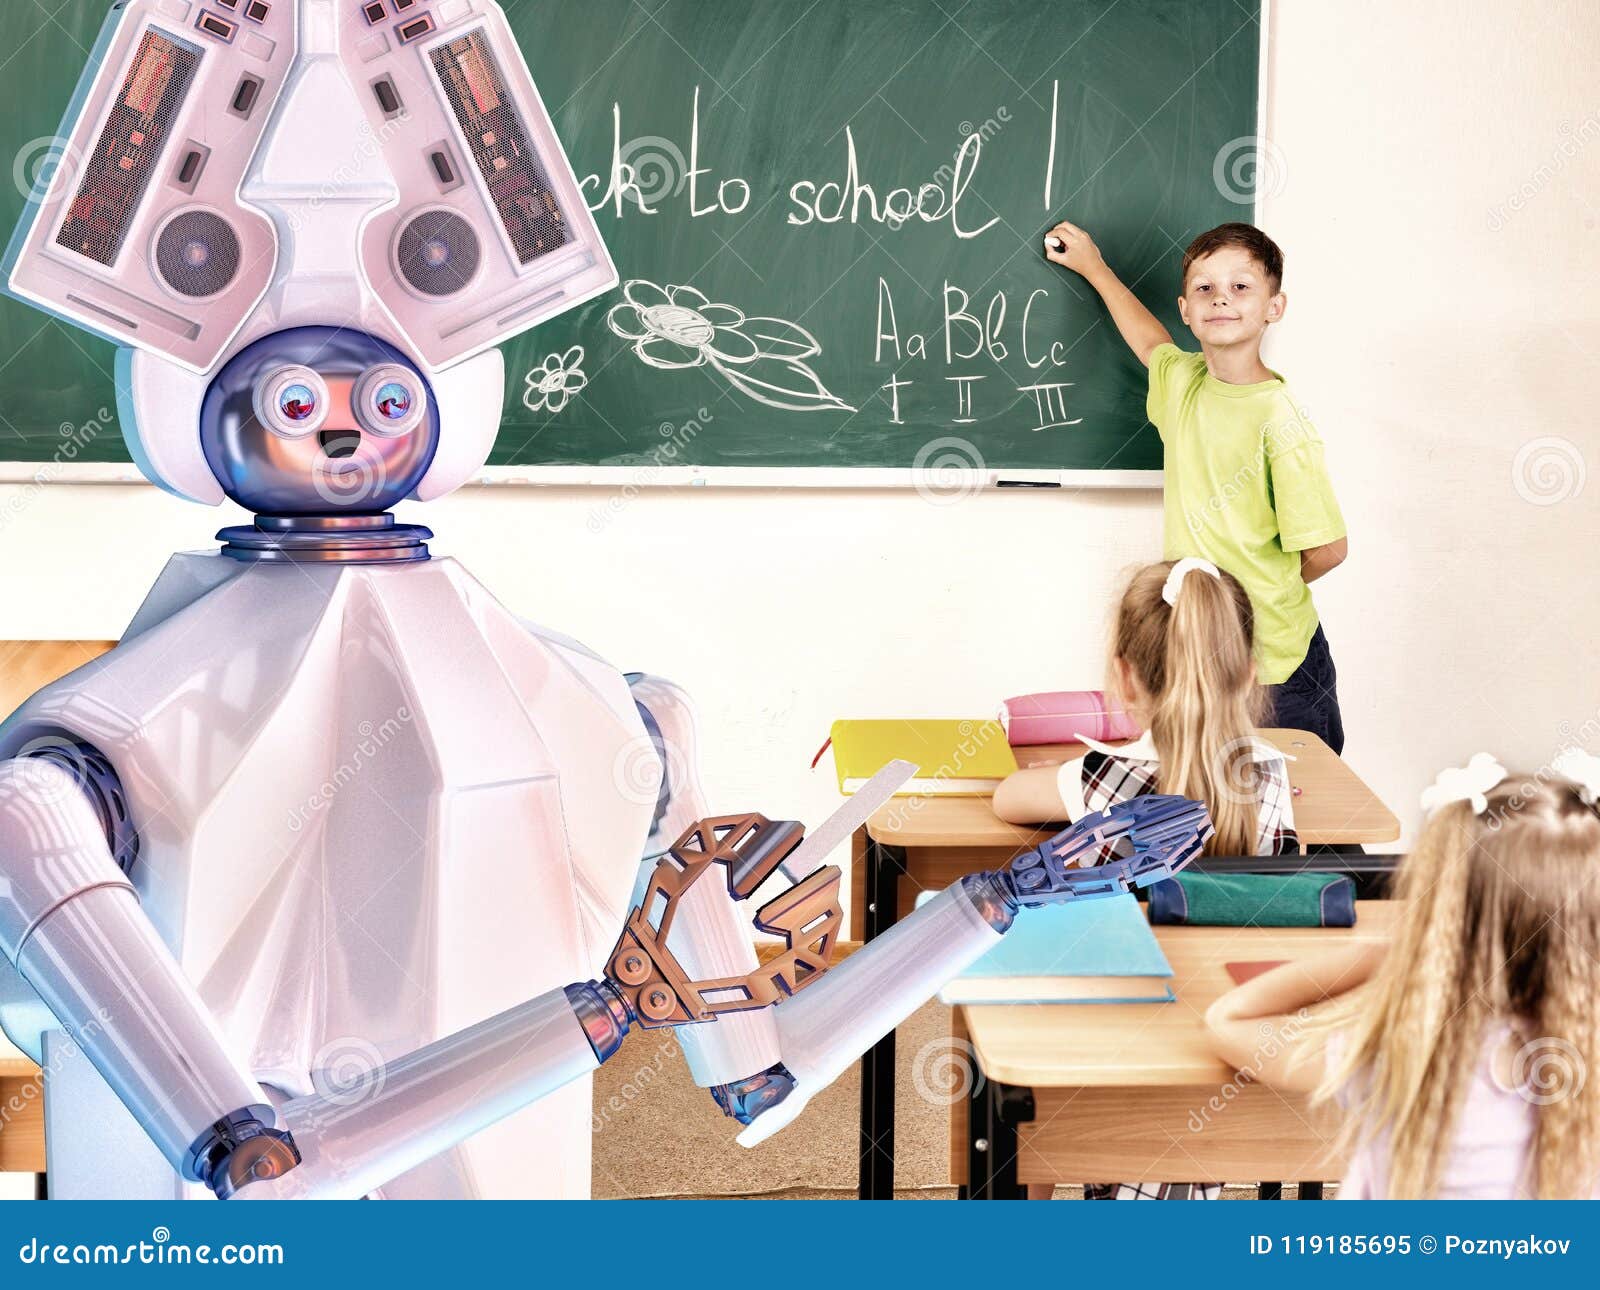 Преподаватель искусственного интеллекта. Учитель робот в школе. Учительница робот. Ученик и робот учитель. Робот учитель будущего.